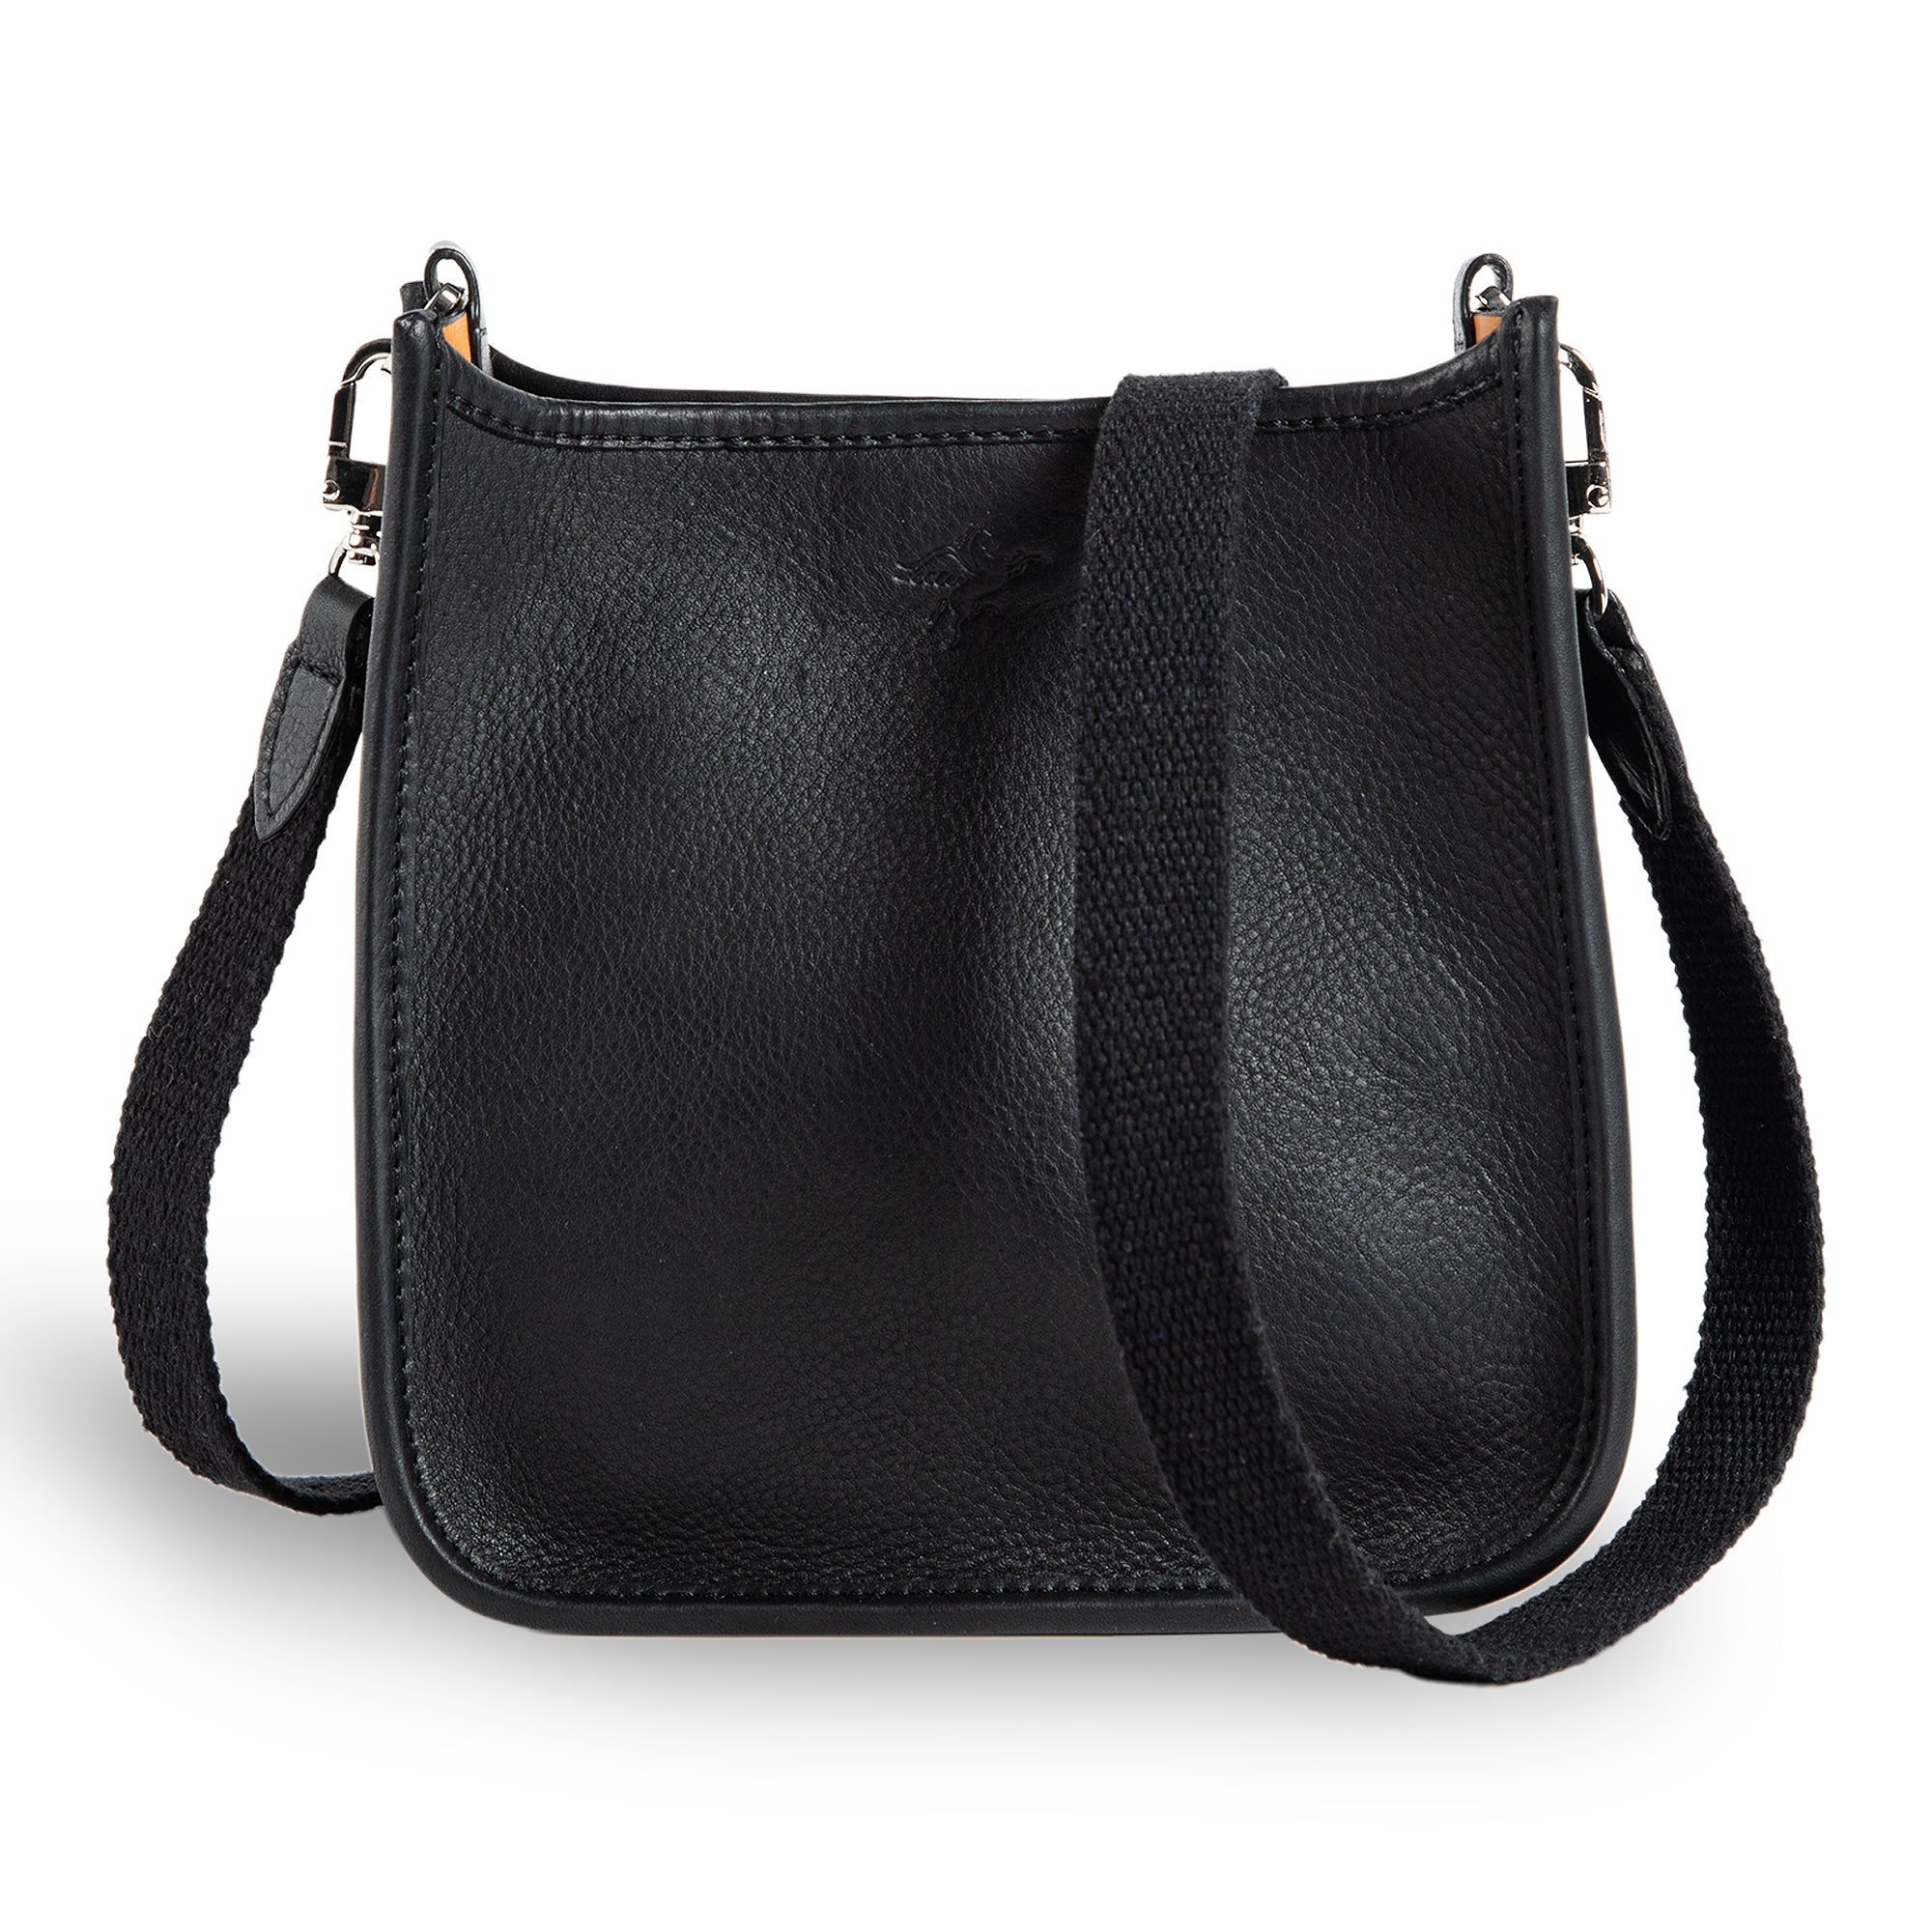 Help me find a black shoulder bag with silver hardware : r/handbags